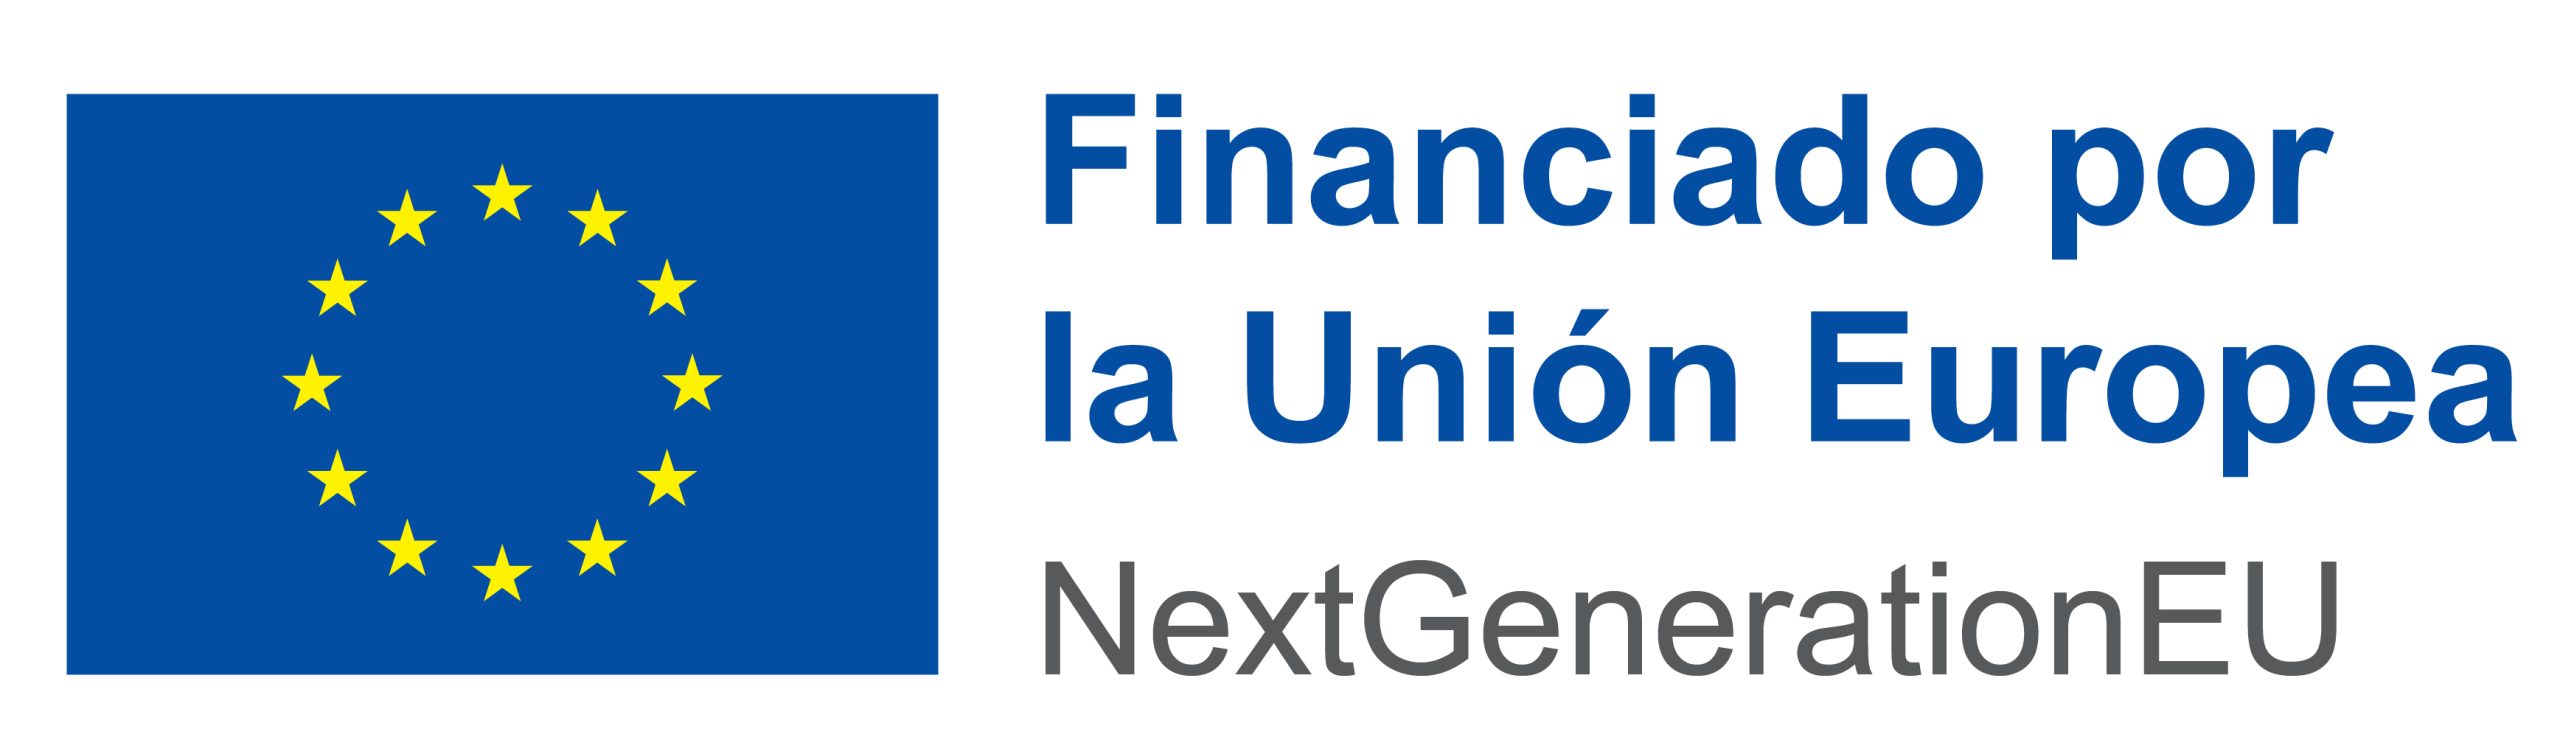 Logotipo de la financiación por la Unión Europea Next Generation EU